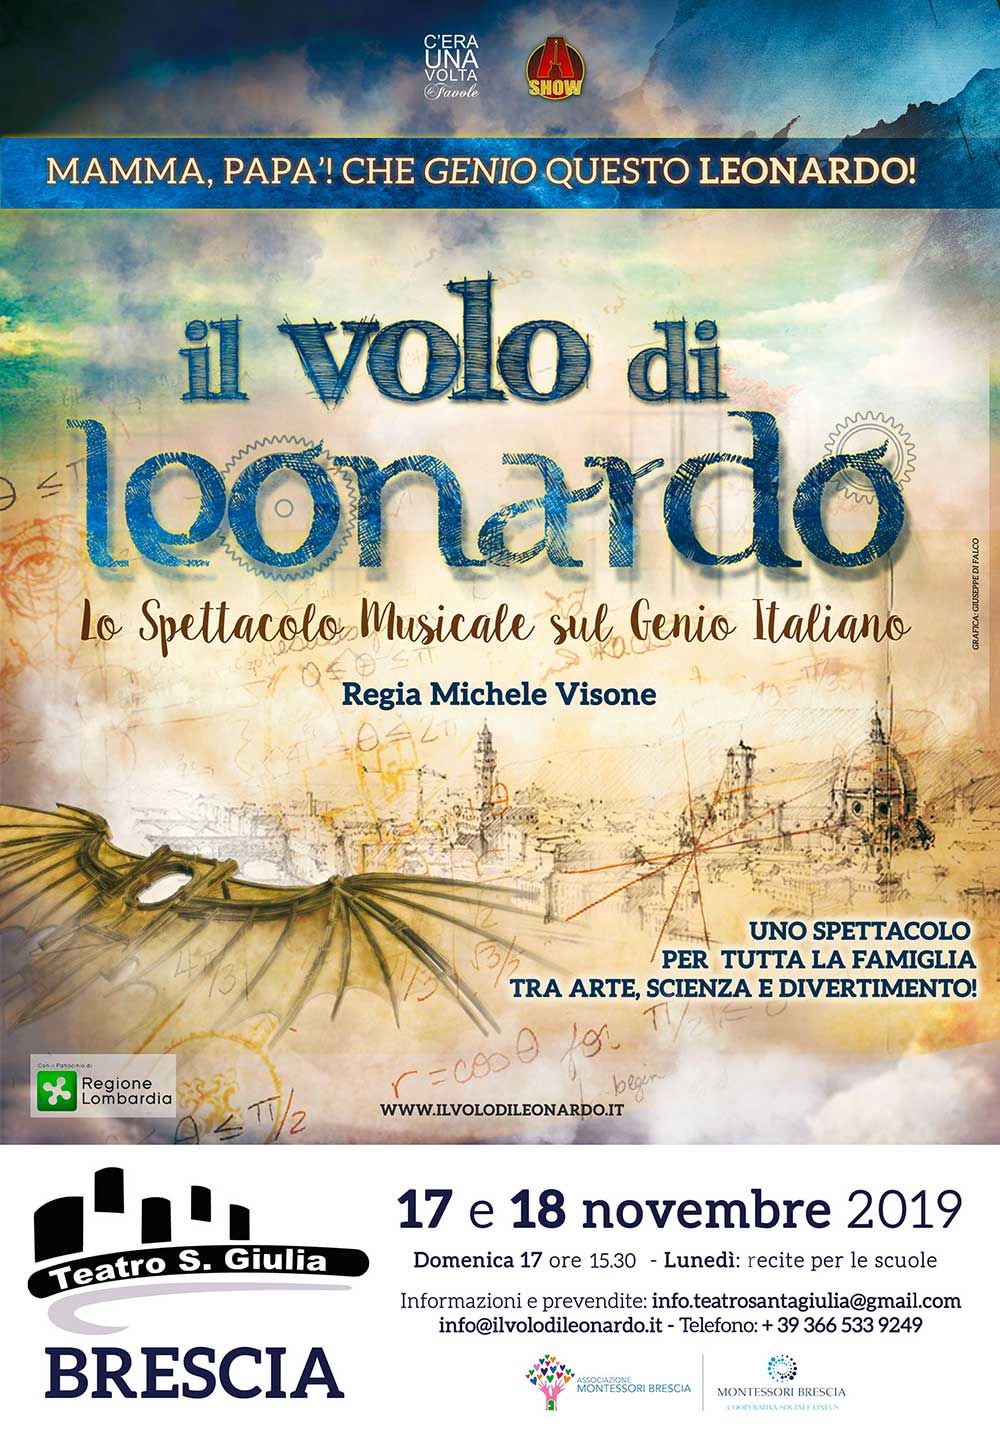 Il-volo-di-leonardo-montessori-brescia-novembre-2019